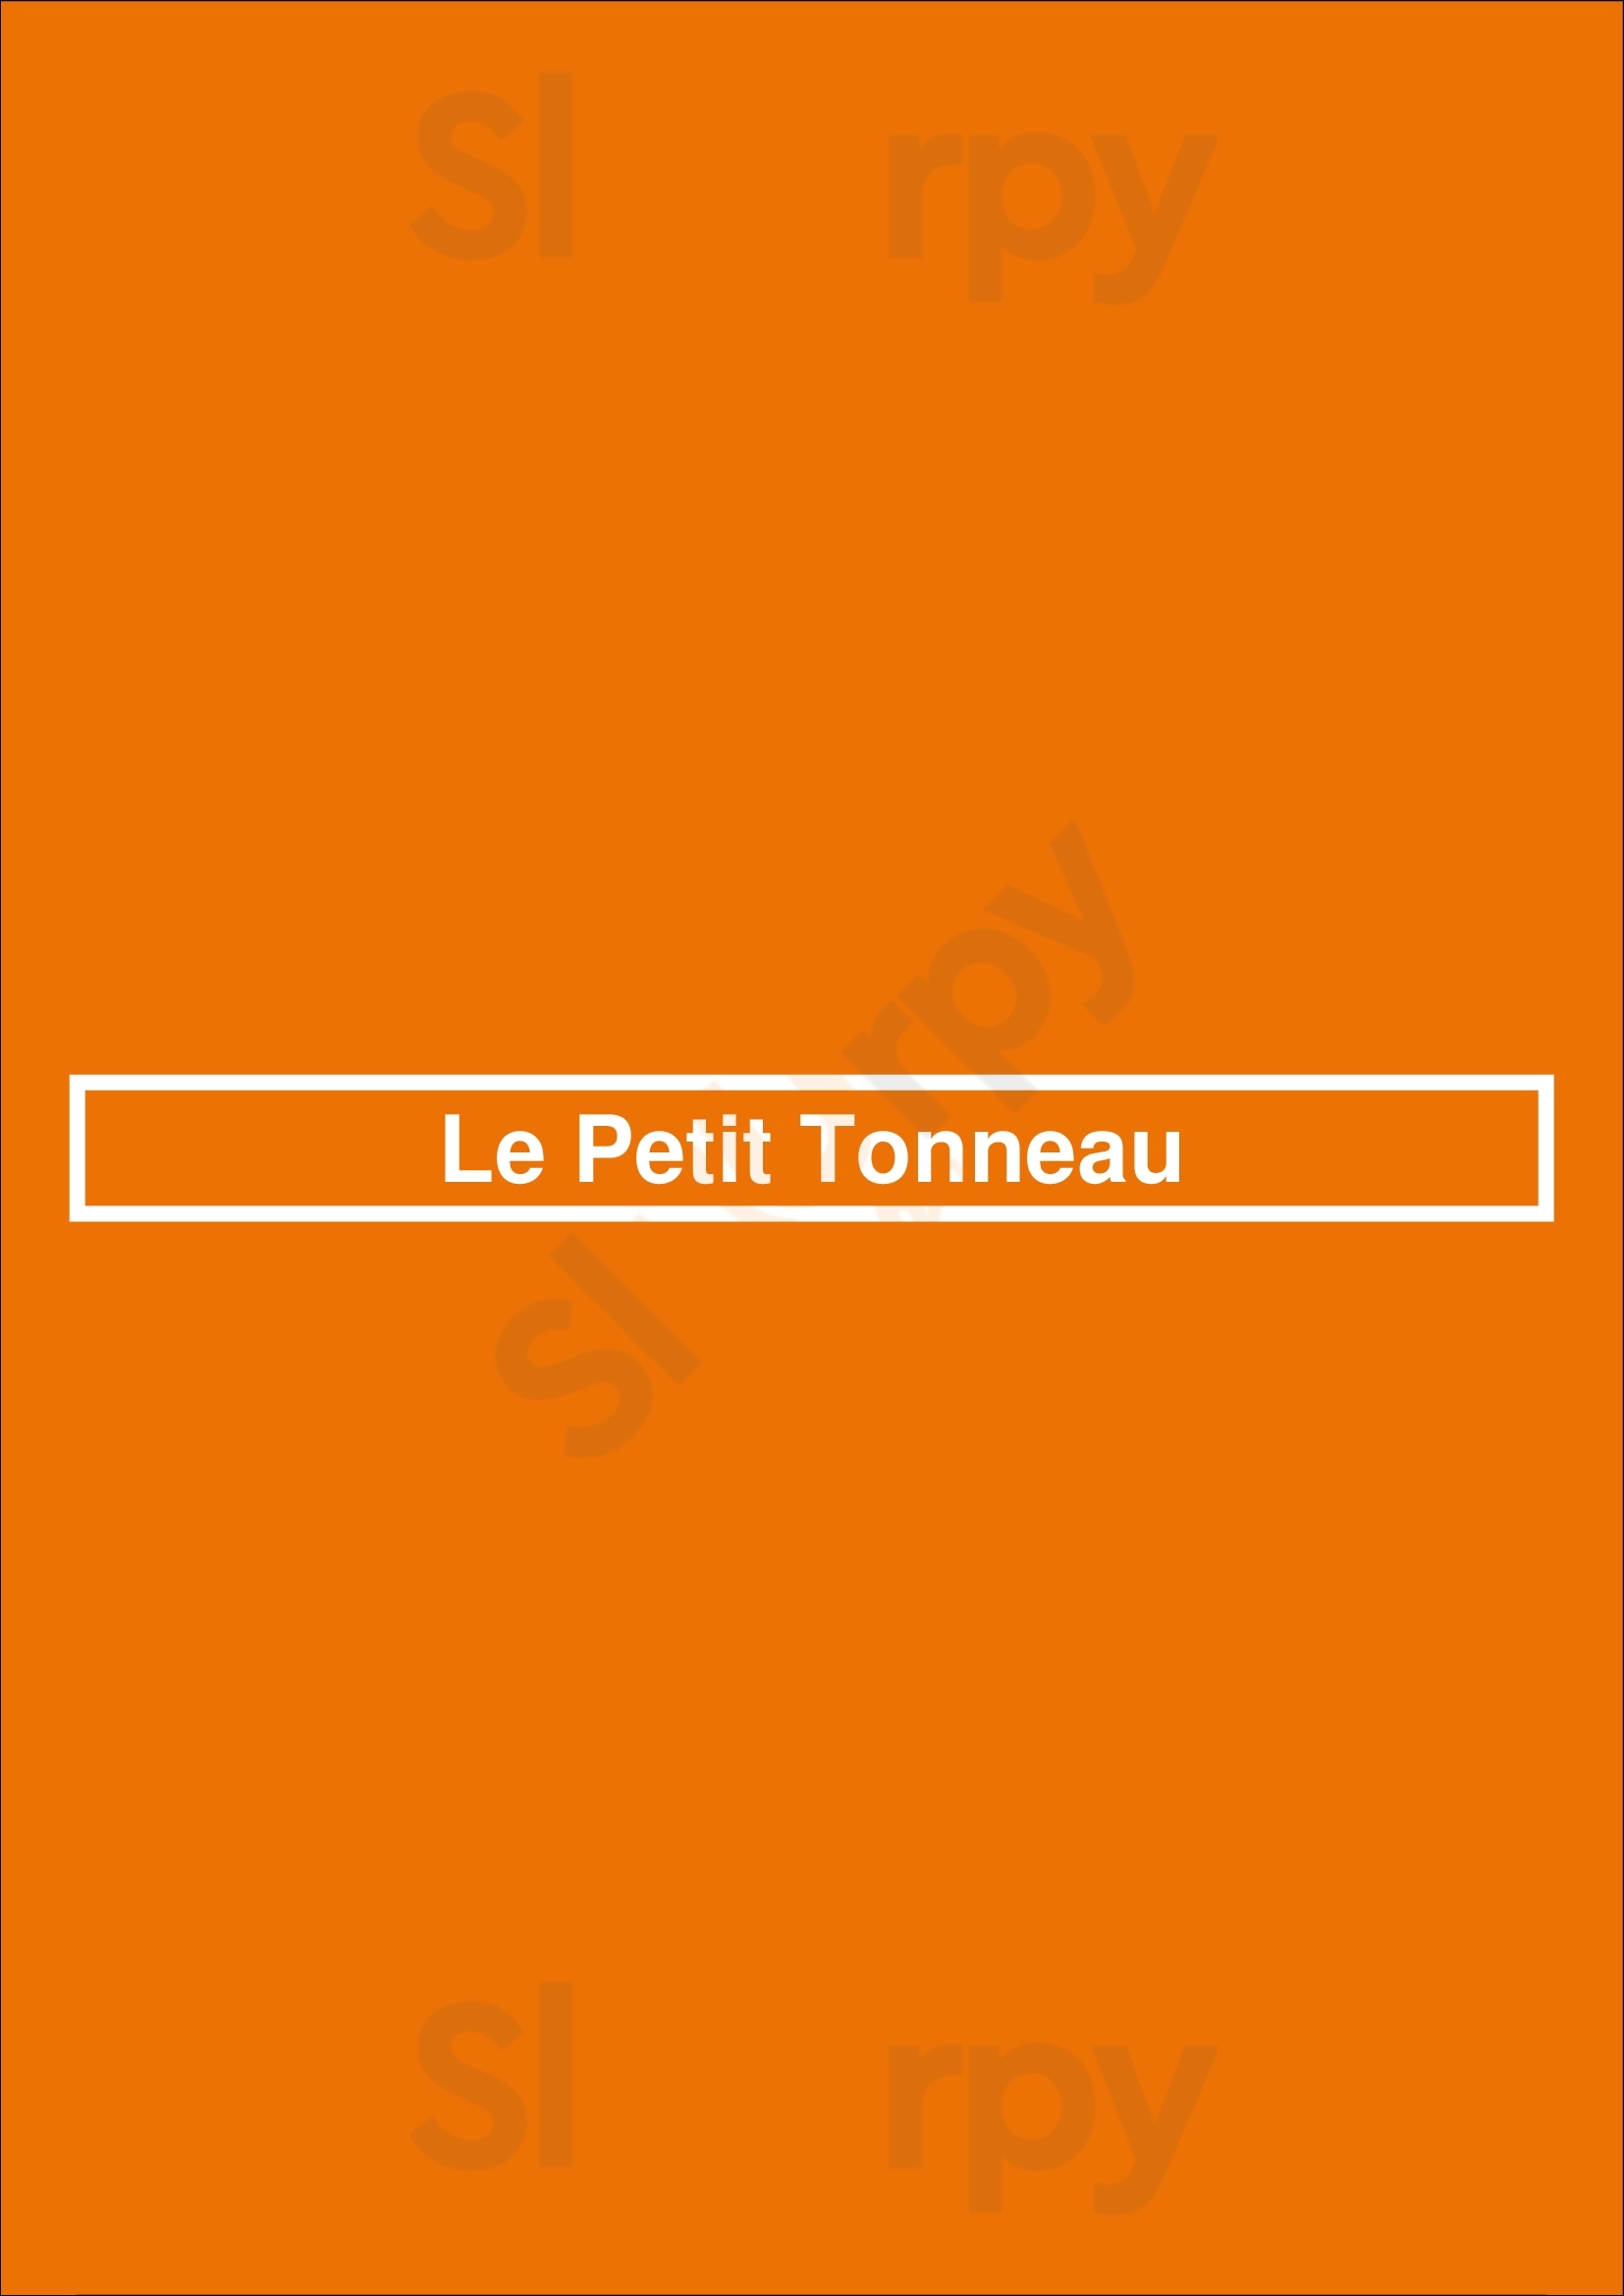 Le Petit Tonneau Issy-les-Moulineaux Menu - 1